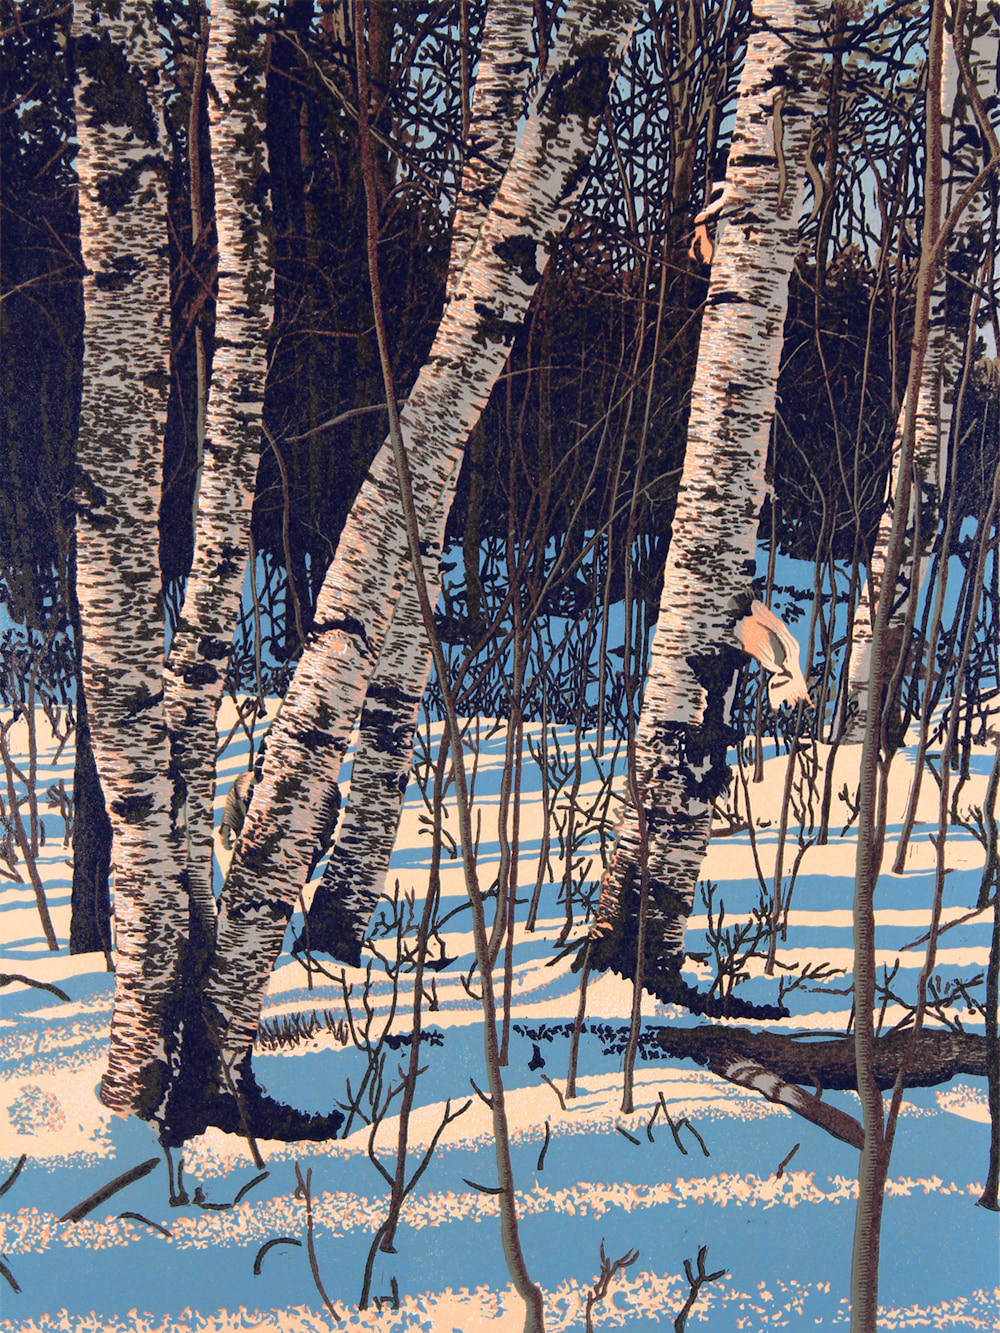 White Birch Shadows, linocut print by William H. Hays